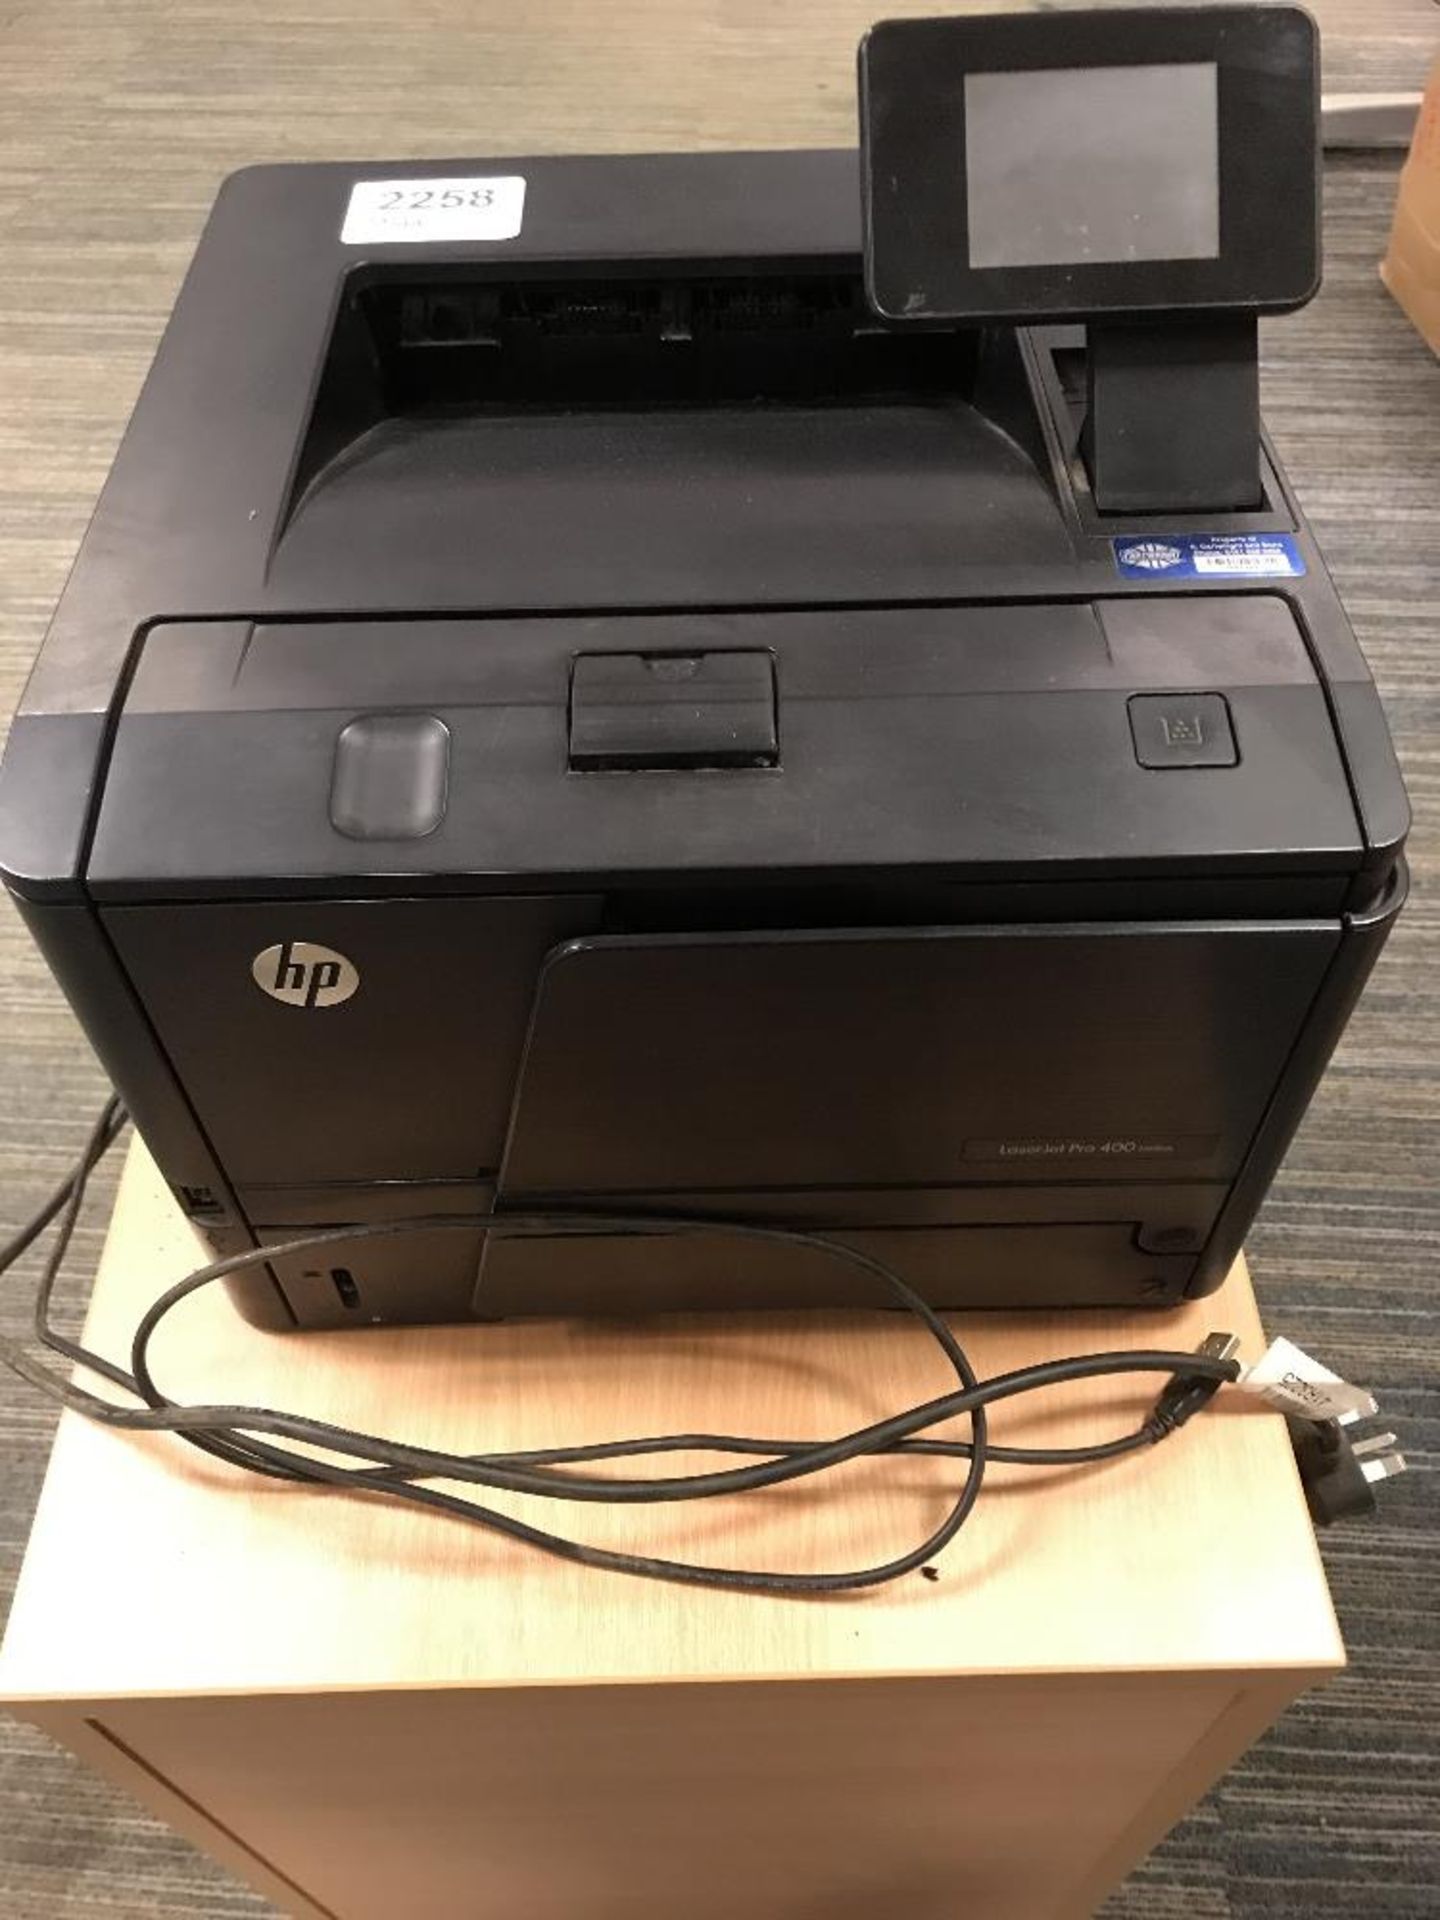 HP LaserJet Pro 400 M401dn Printer